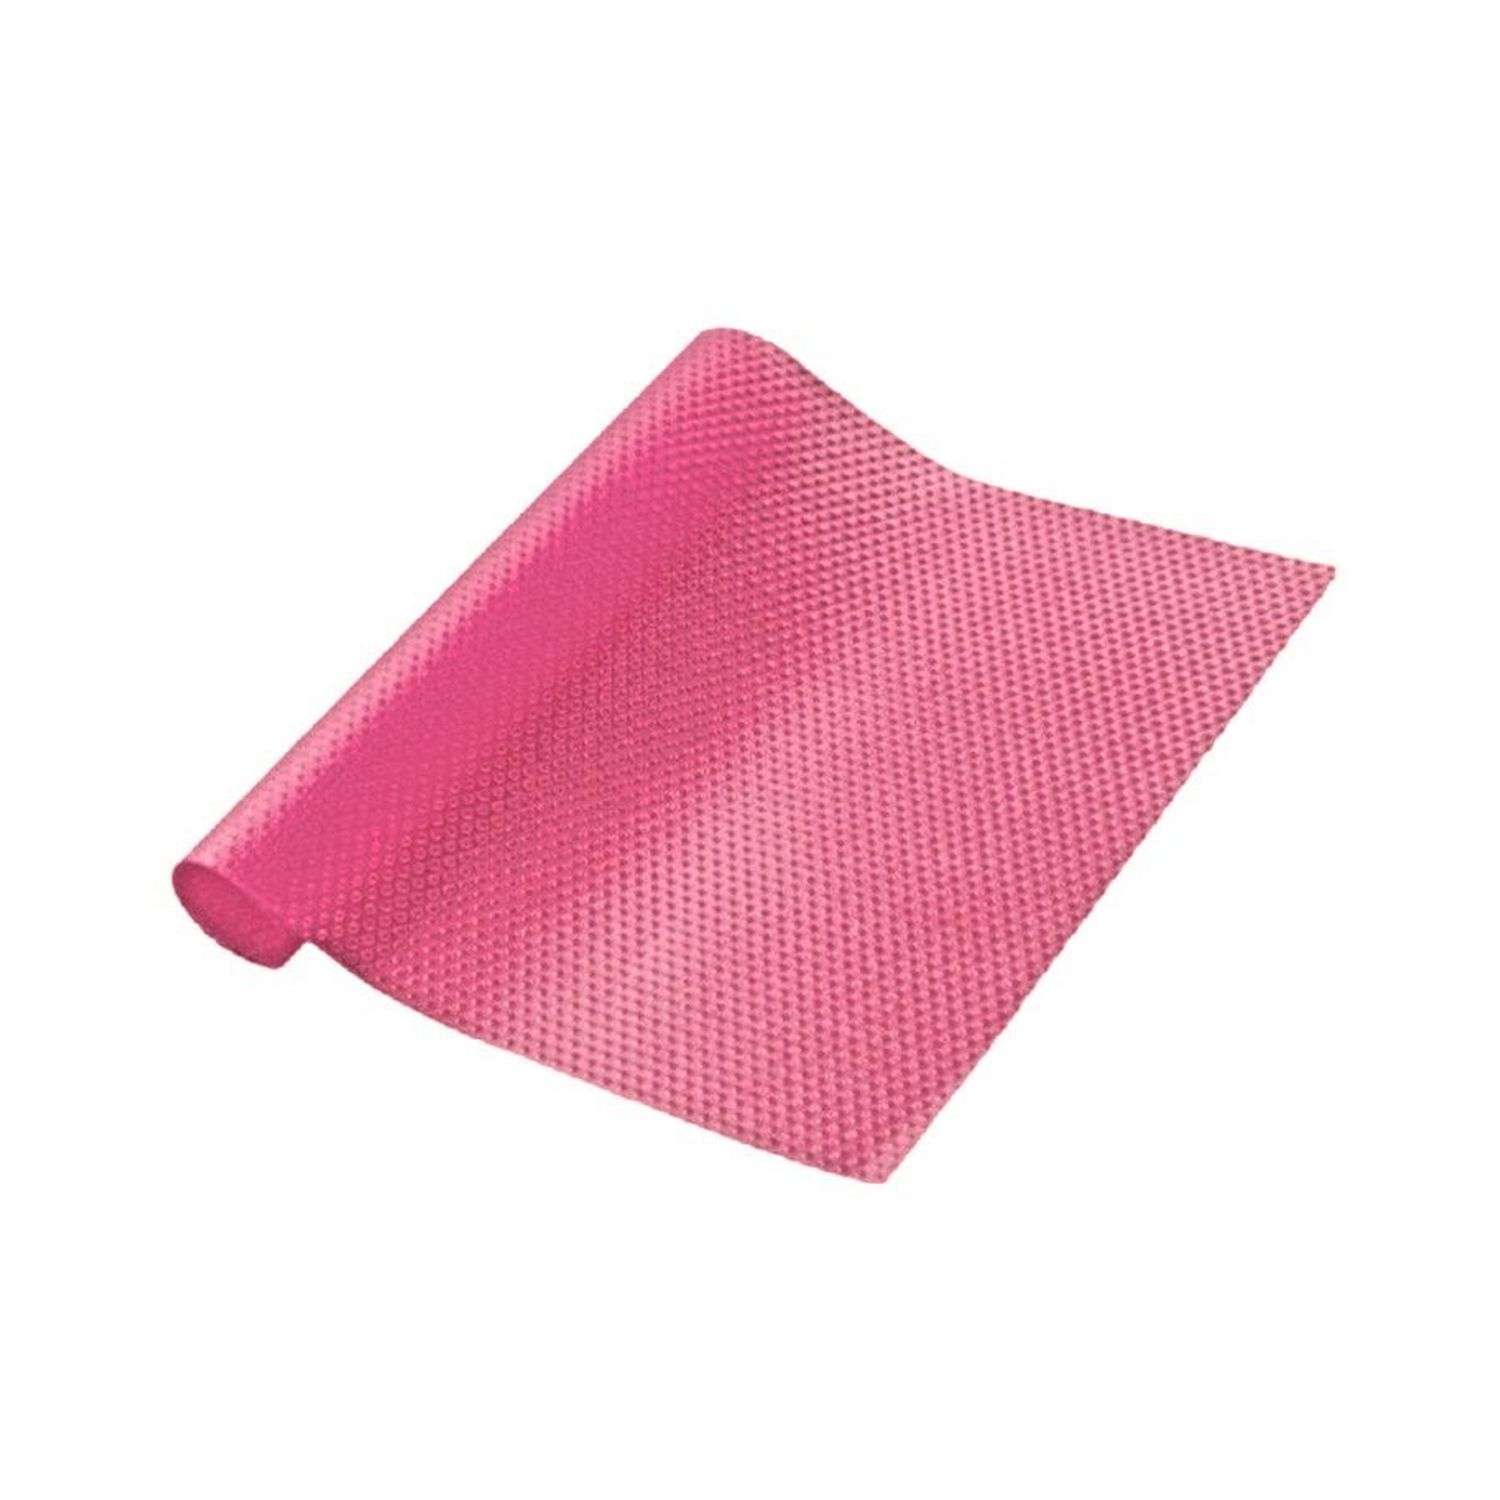 Кухонный коврик - подстилка Uniglodis многофункциональный 30х45 см розовый - фото 2